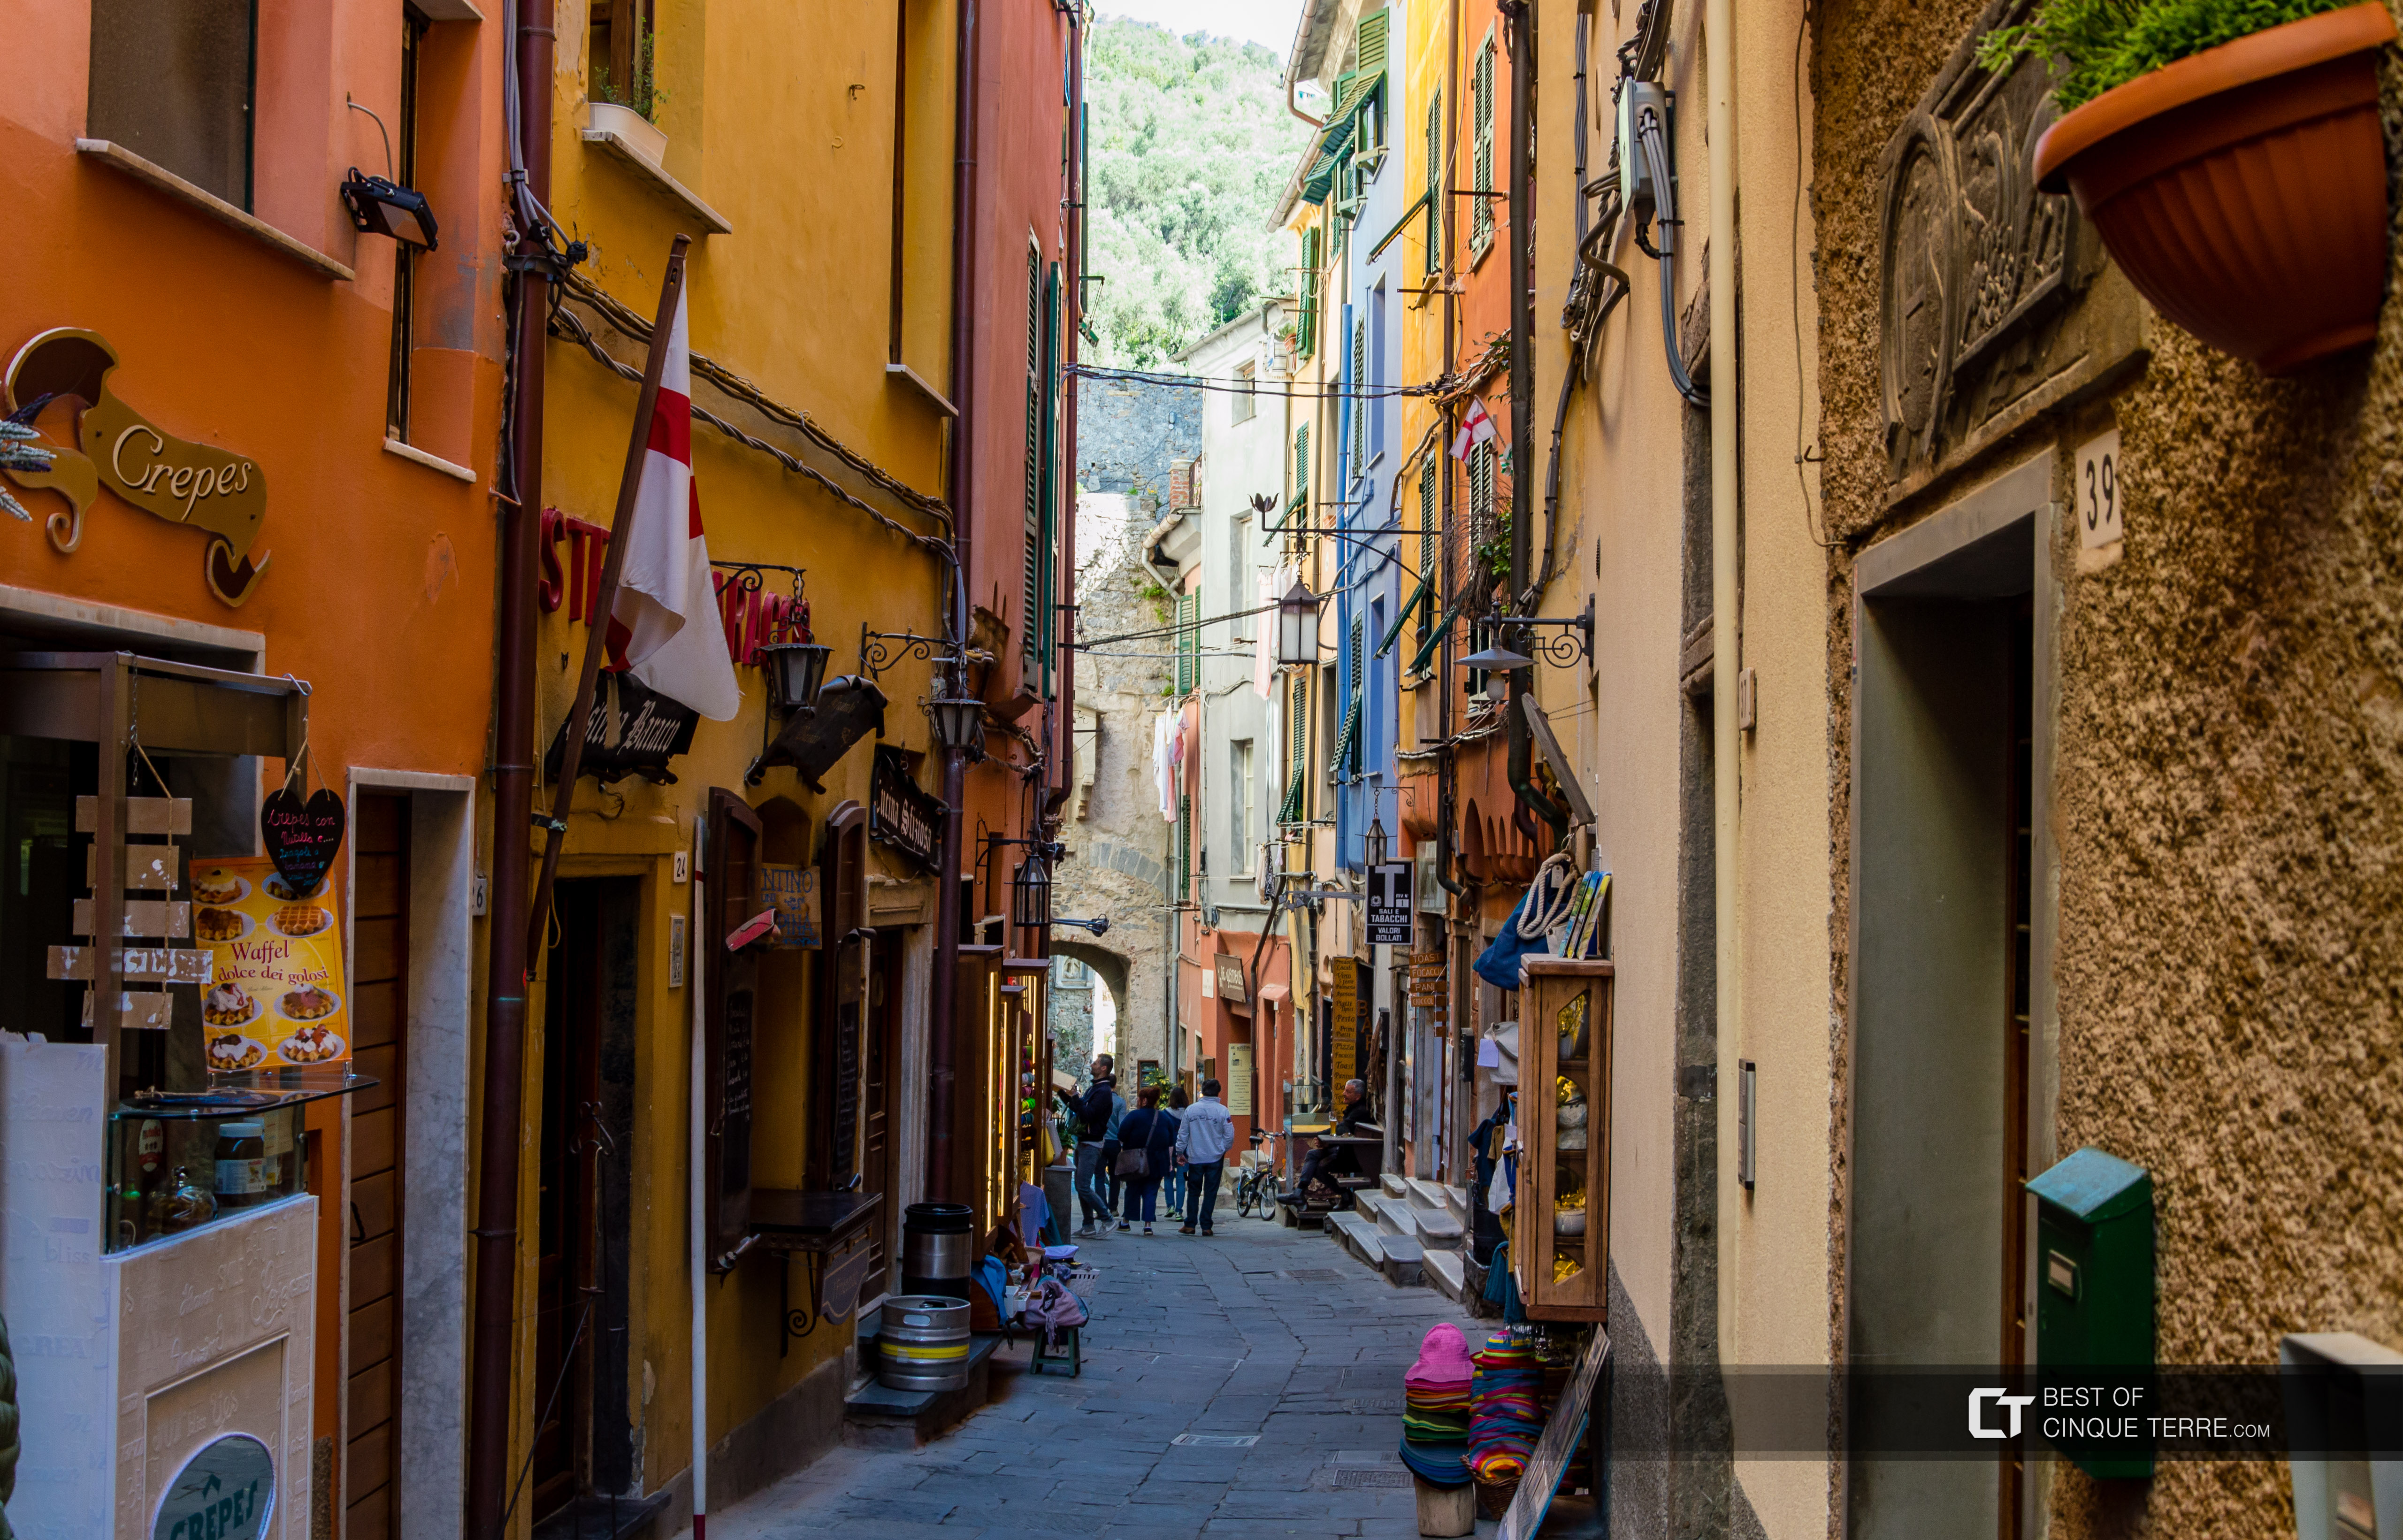 The main street, Portovenere, Italy